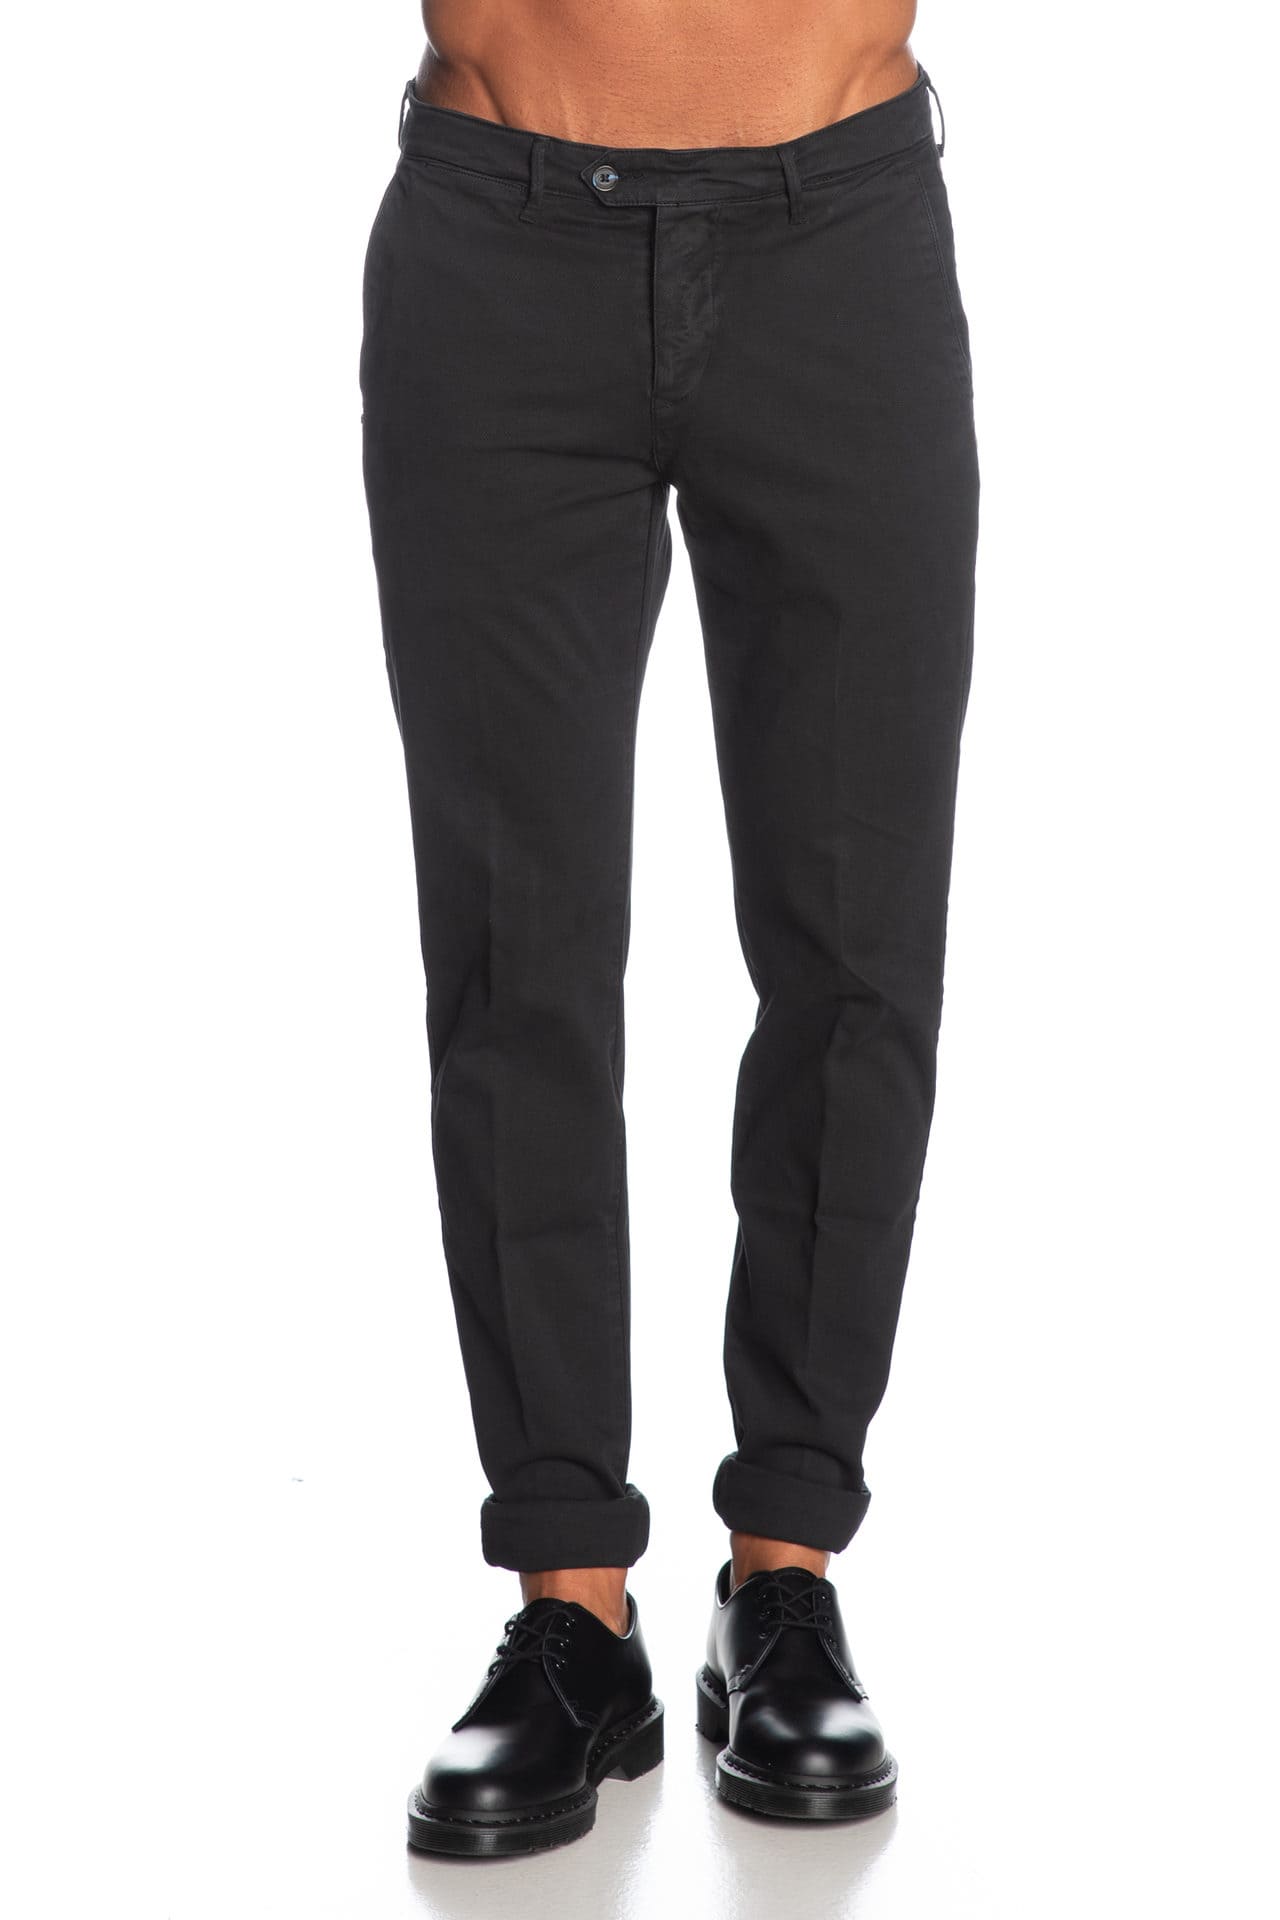 Pantaloni tasca america in cotone elasticizzato SLIM - nero - ZERO/CONSTRUCTION